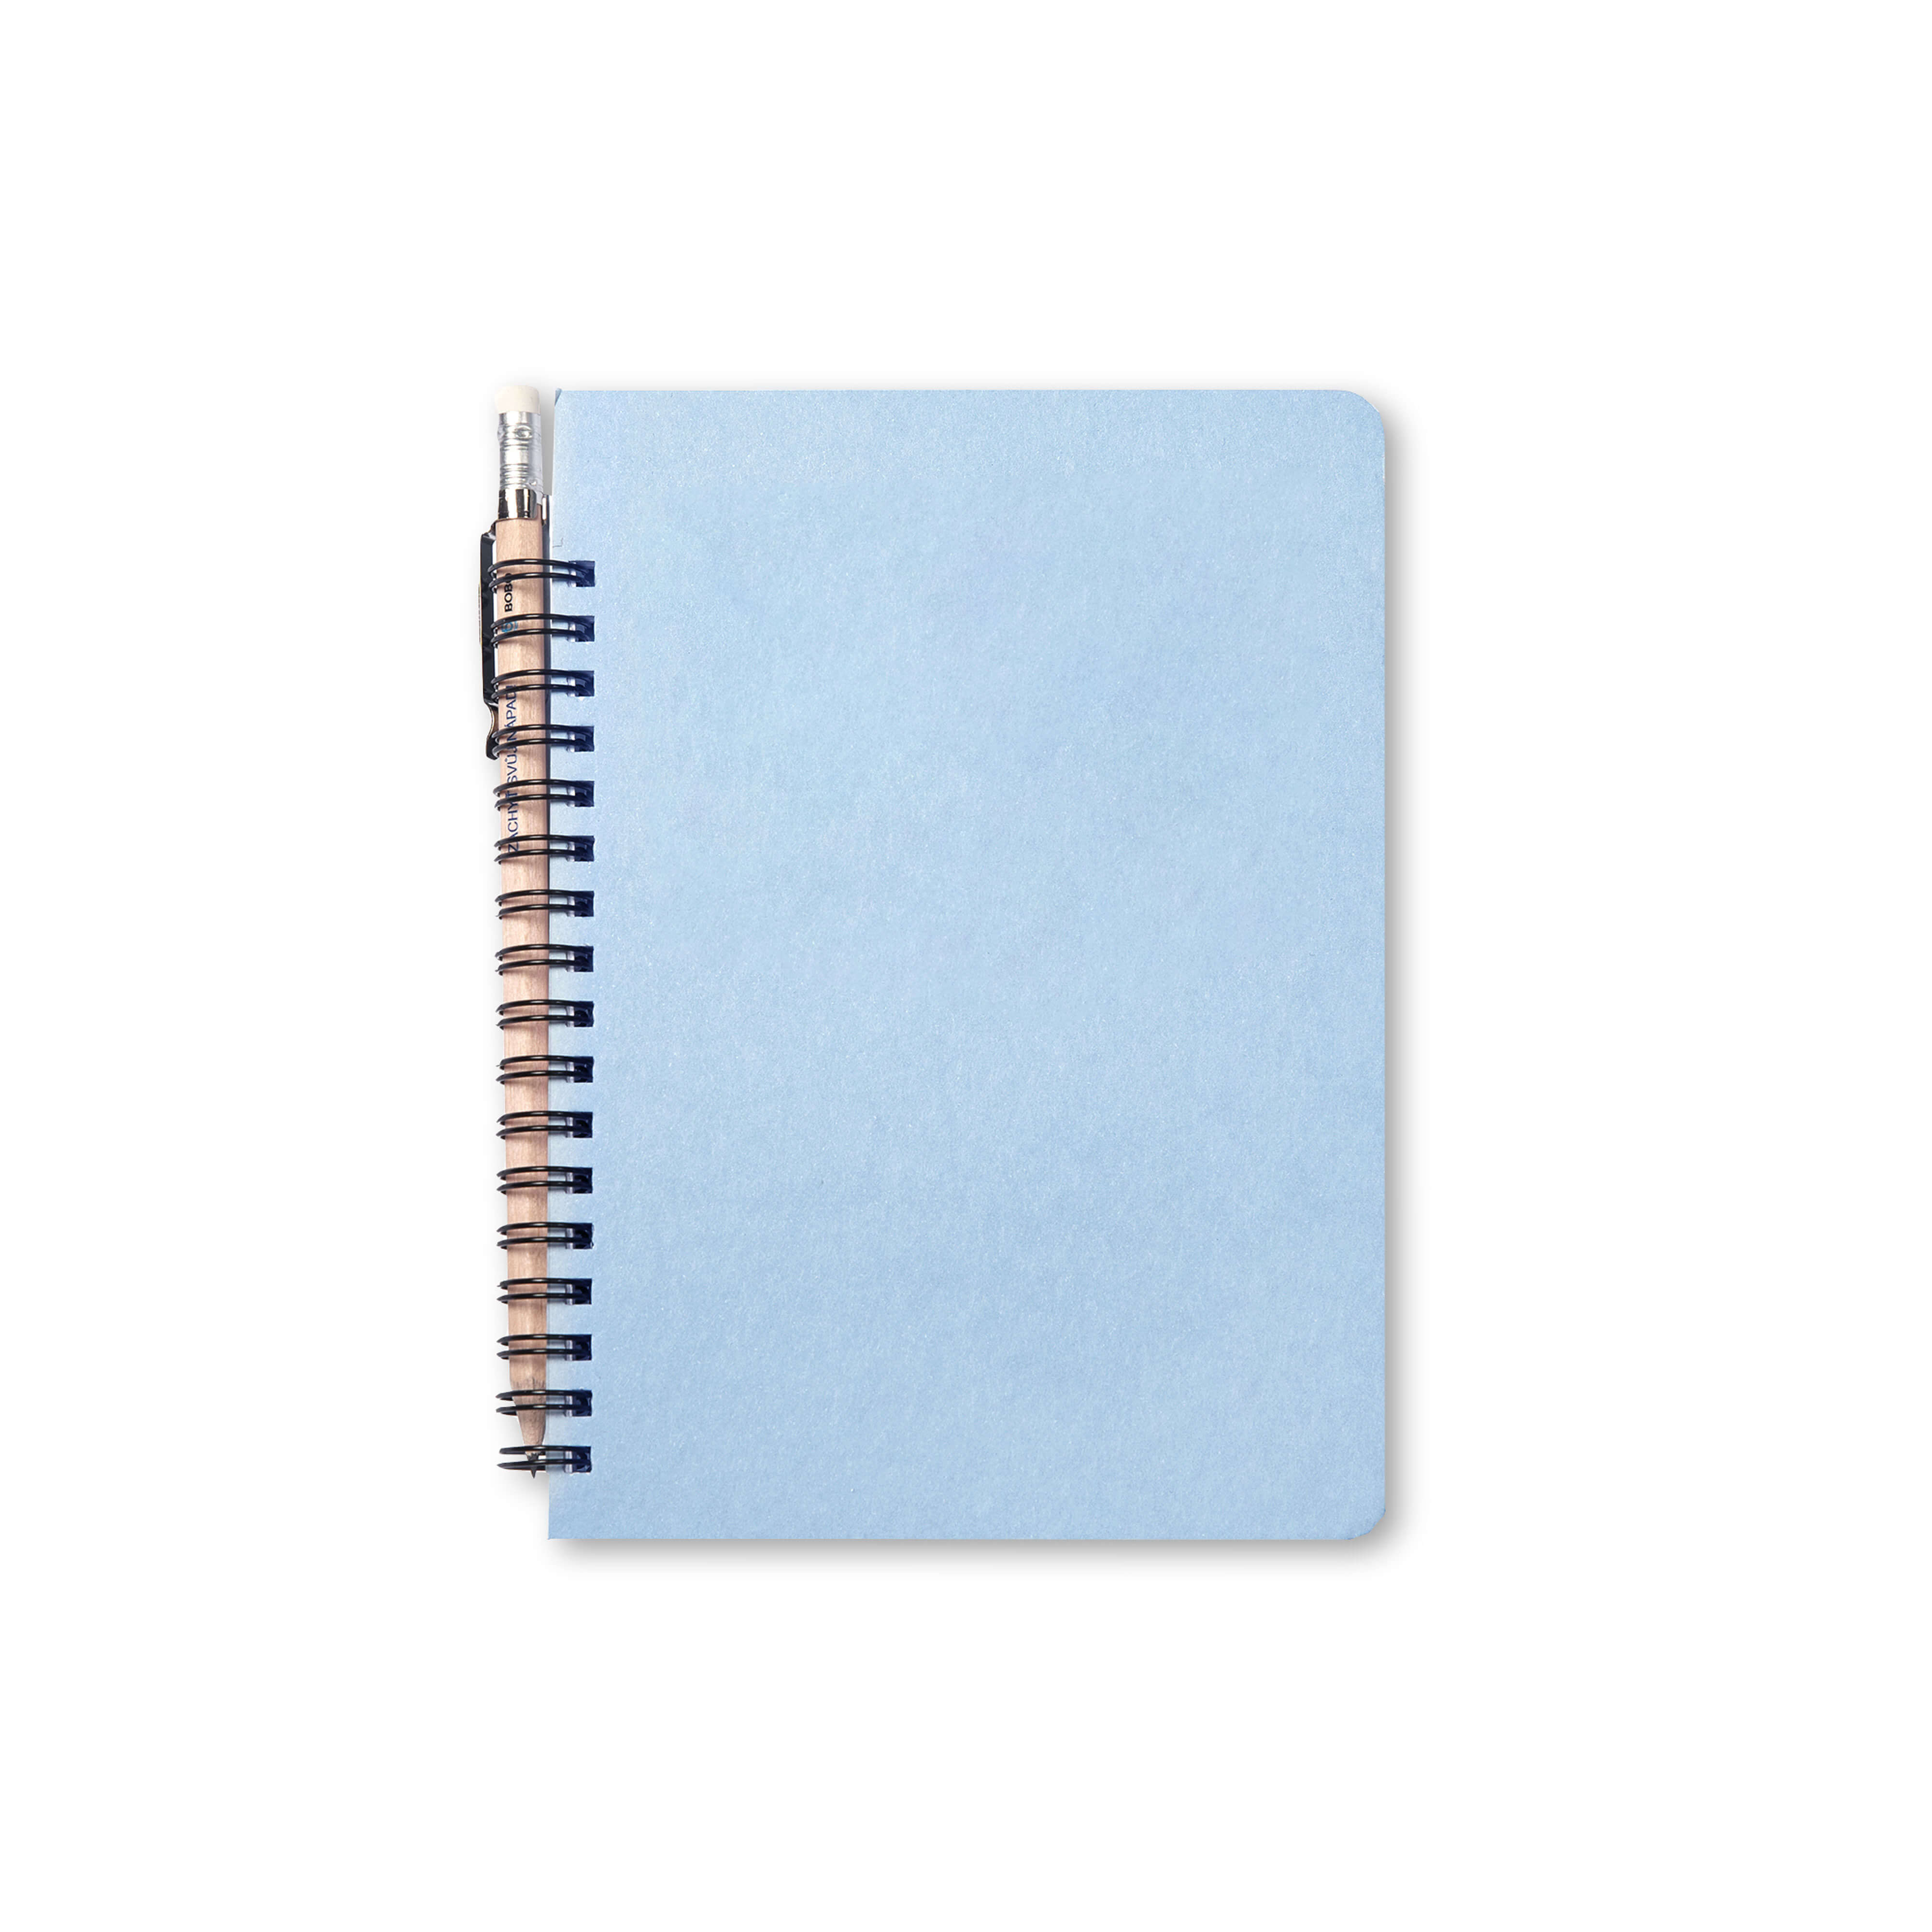 BOBO Zápisník s tužkou Retro, B6, čistý, konfiguruj si obálku